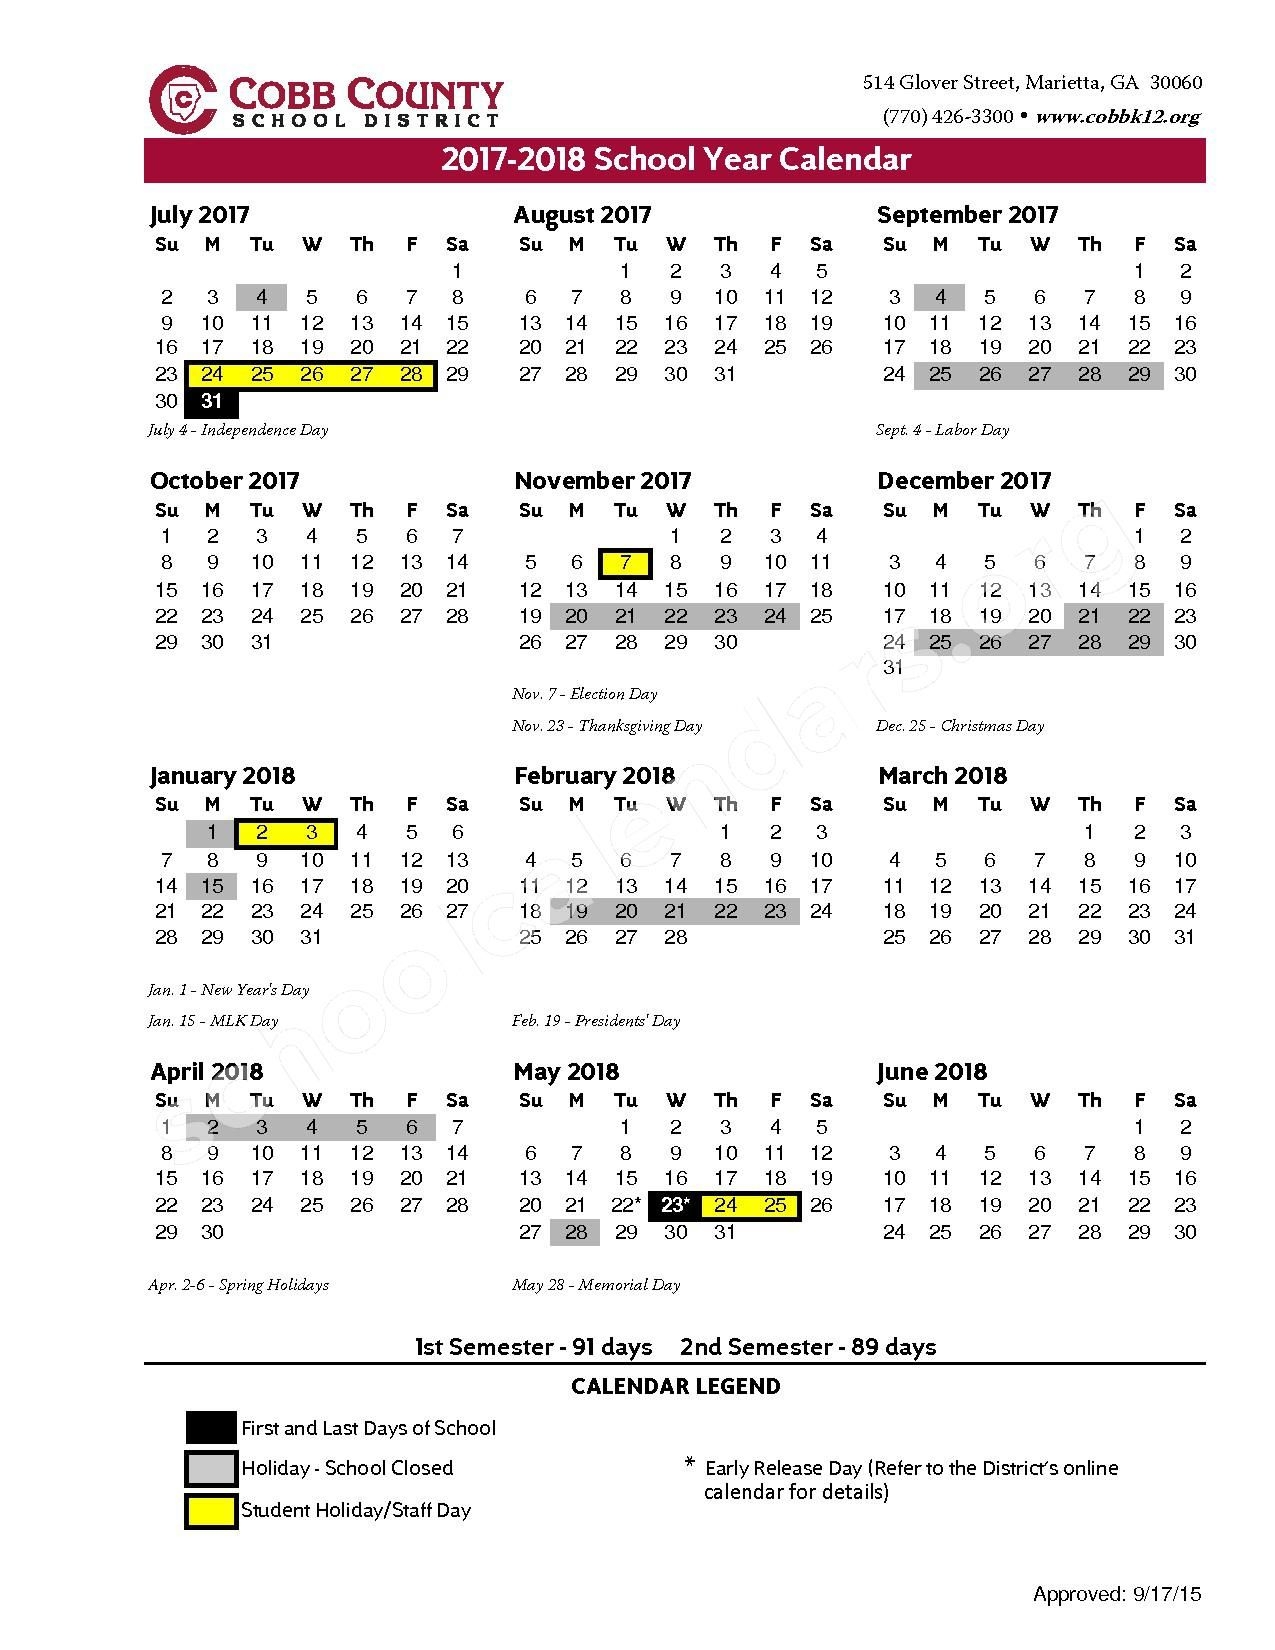 cobb-county-school-calendar-qualads